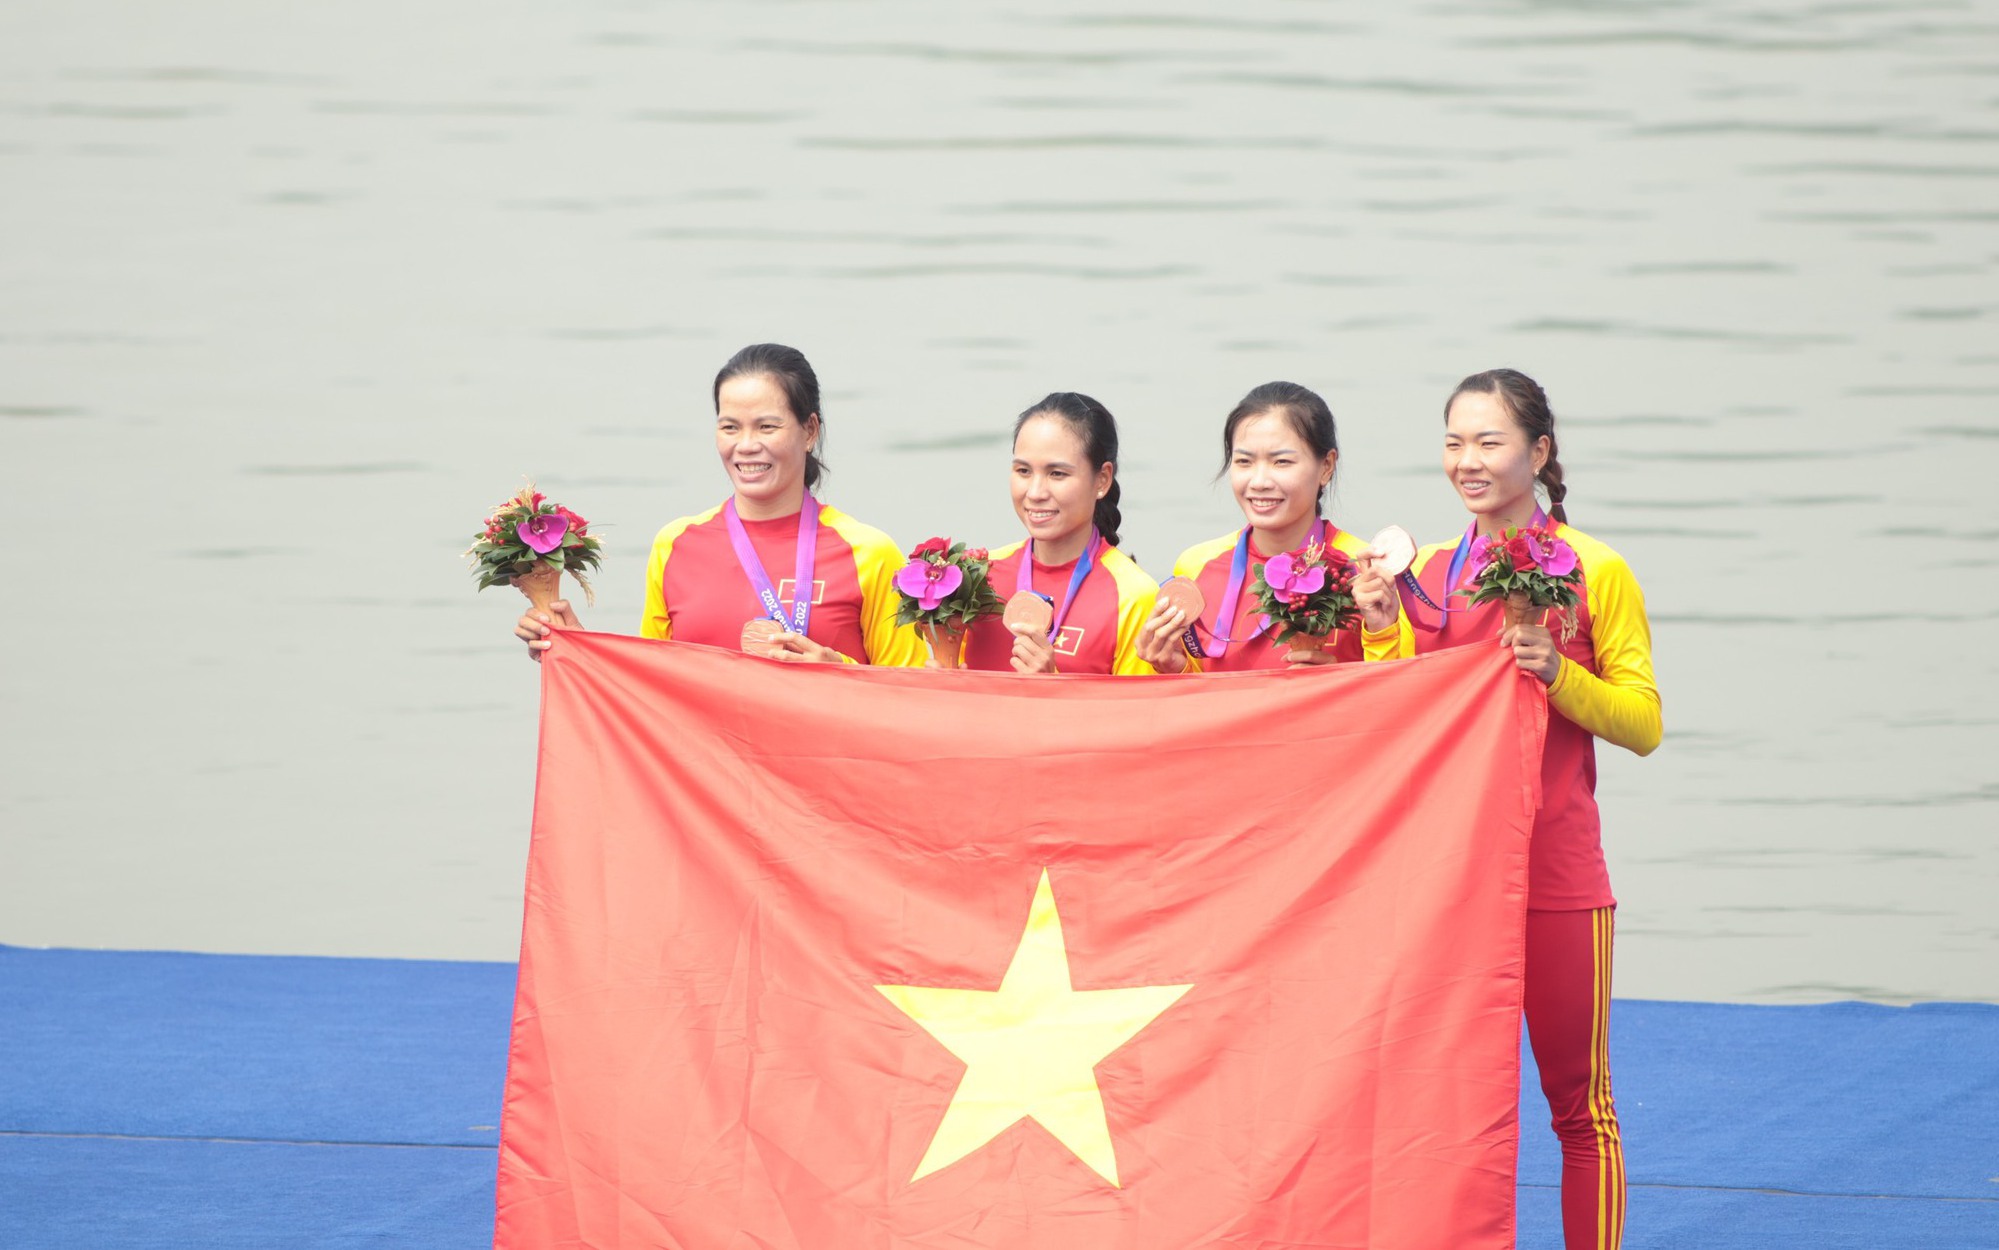 Video: Chủ nhân tấm huy chương đầu tiên của Việt Nam tại ASIAD 19 nói gì sau màn đua thuyền rowing kịch tính?